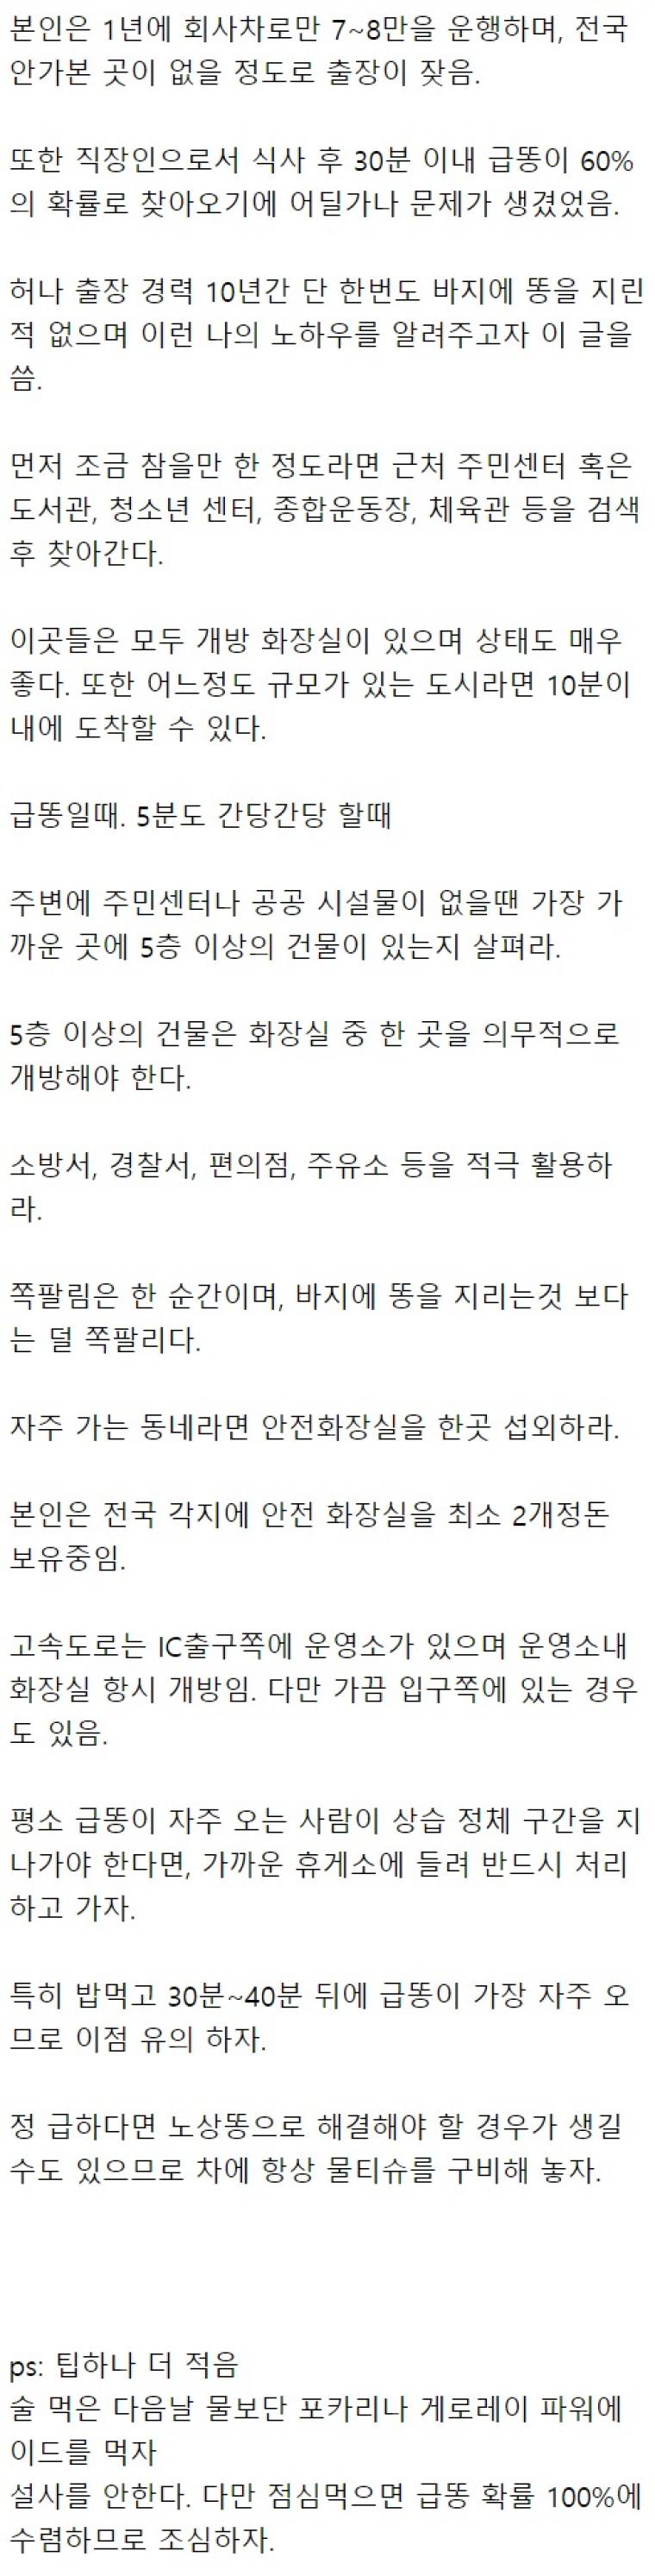 지방출장 잦은 네티즌의 급똥시 팁.jpg